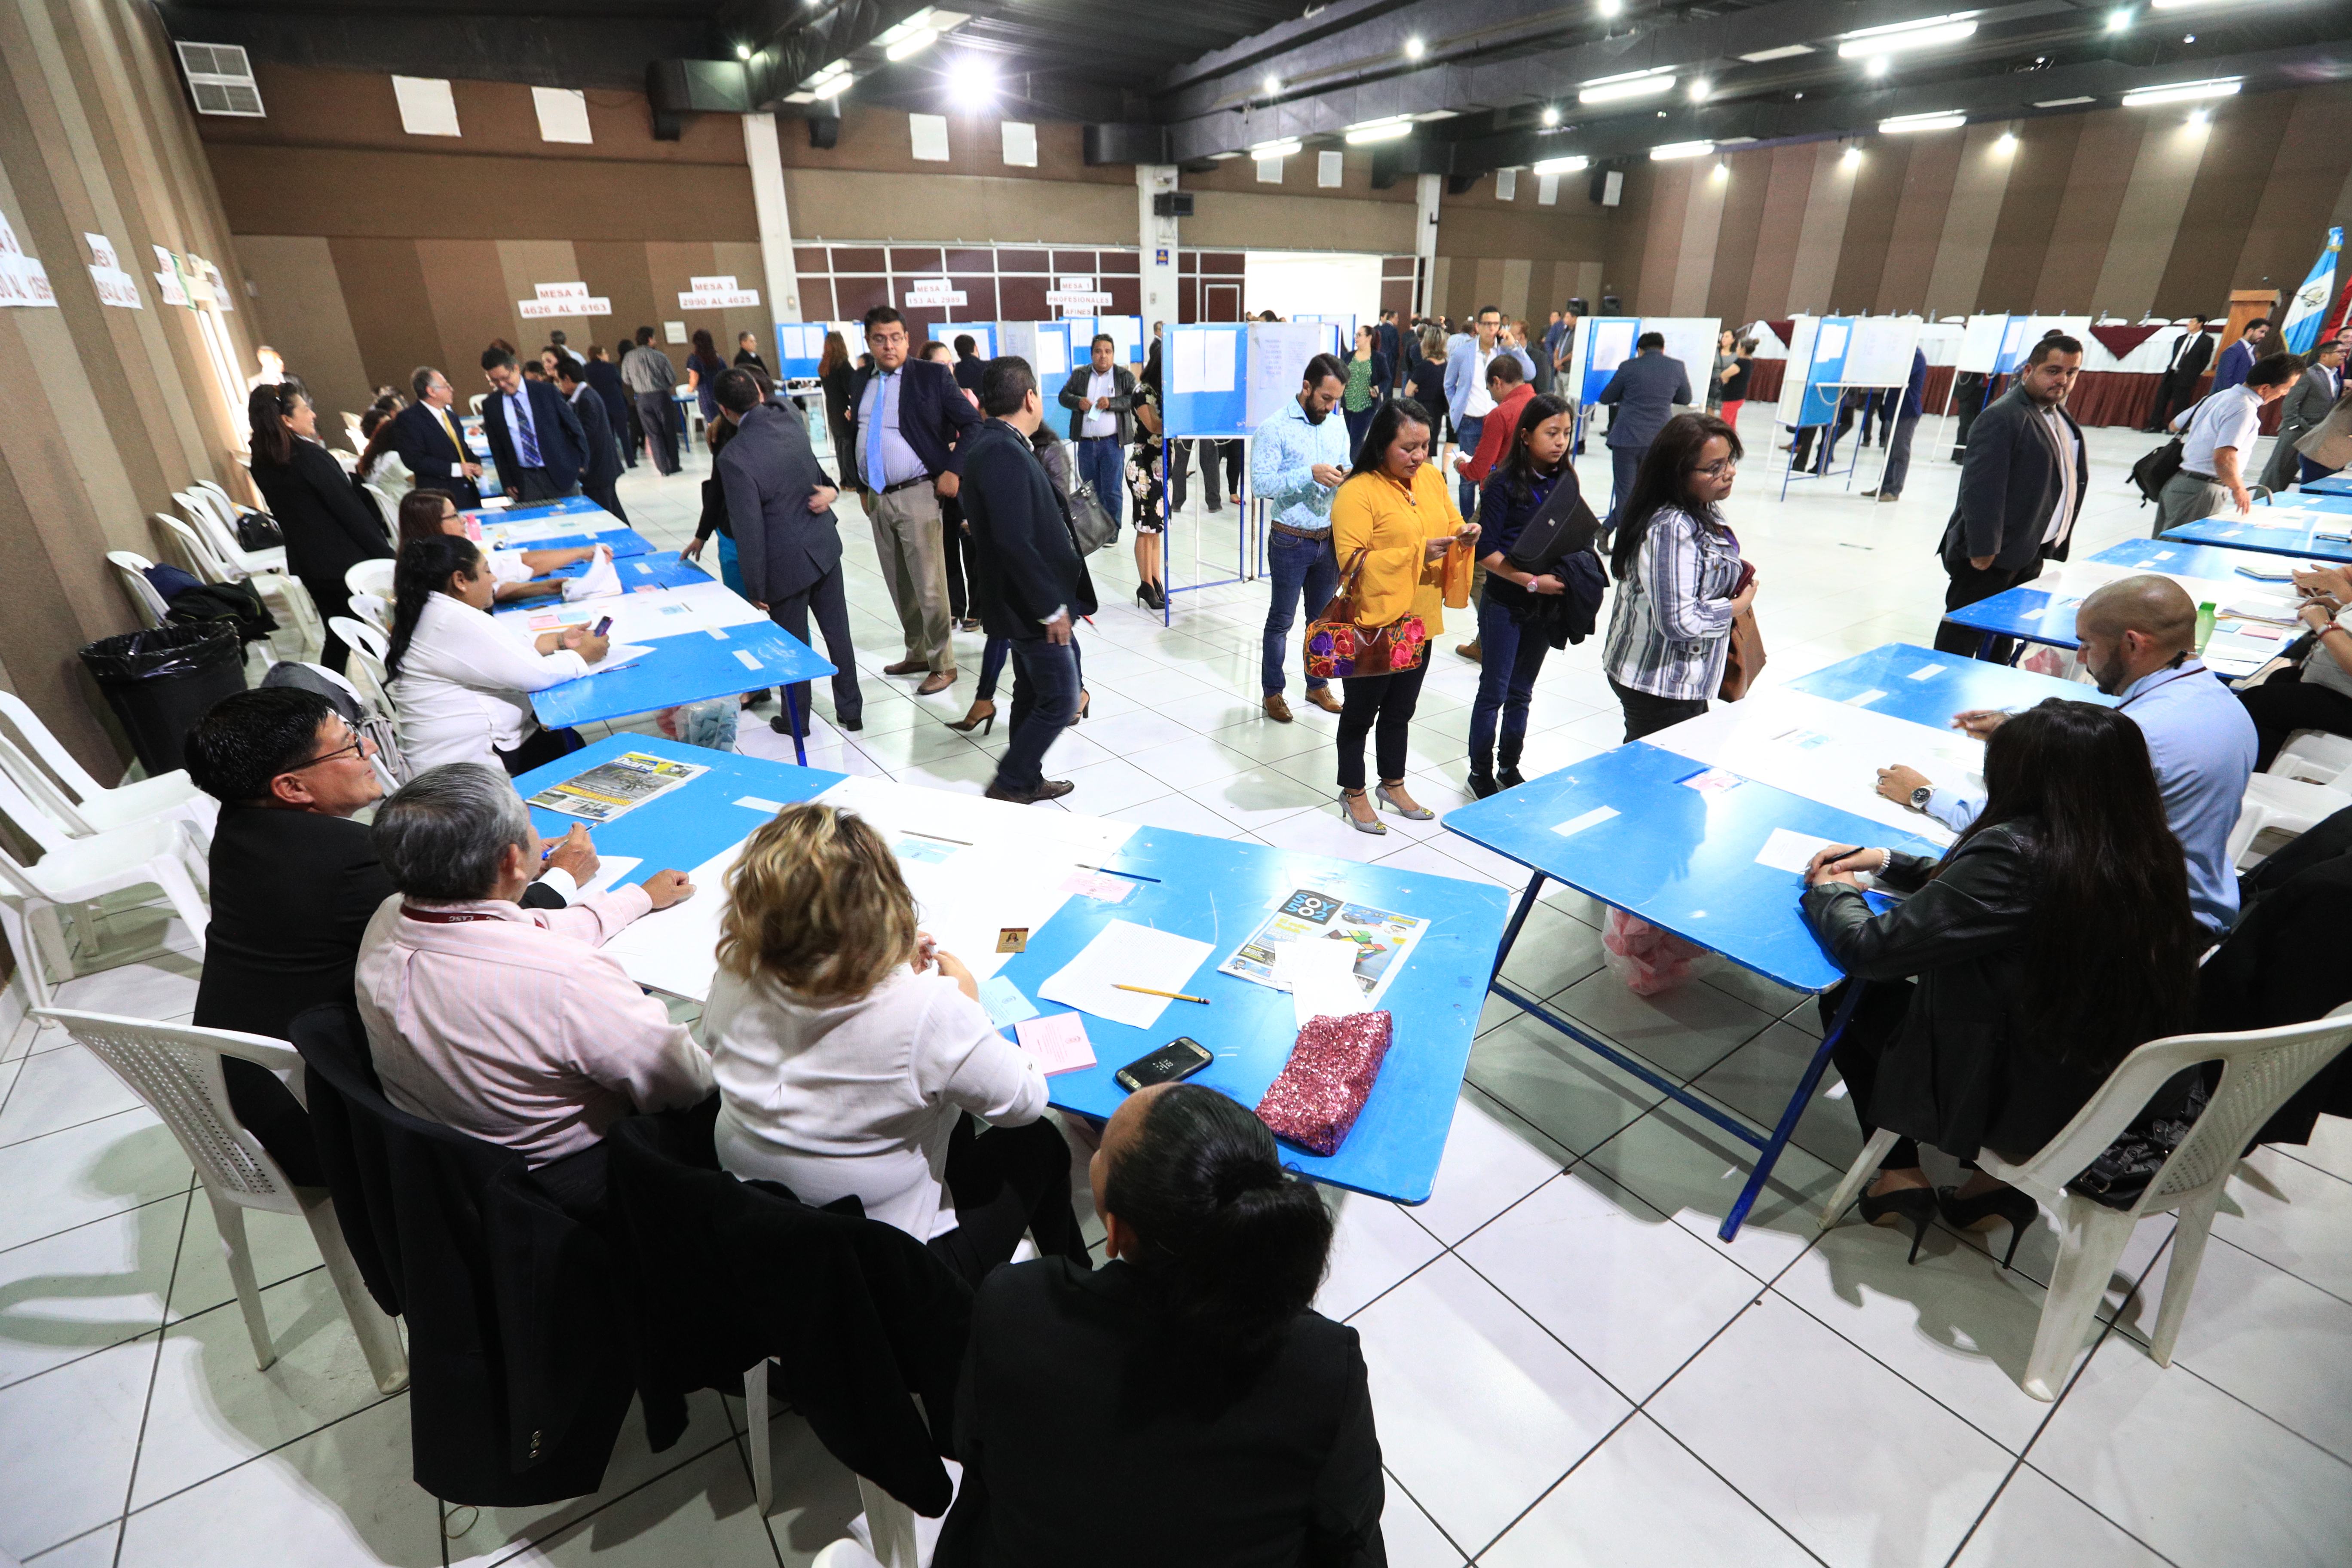 Los profesionales que conforman el Colegio de Abogados acudieron a votar. (Foto Prensa Libre: Carlos Hernández)